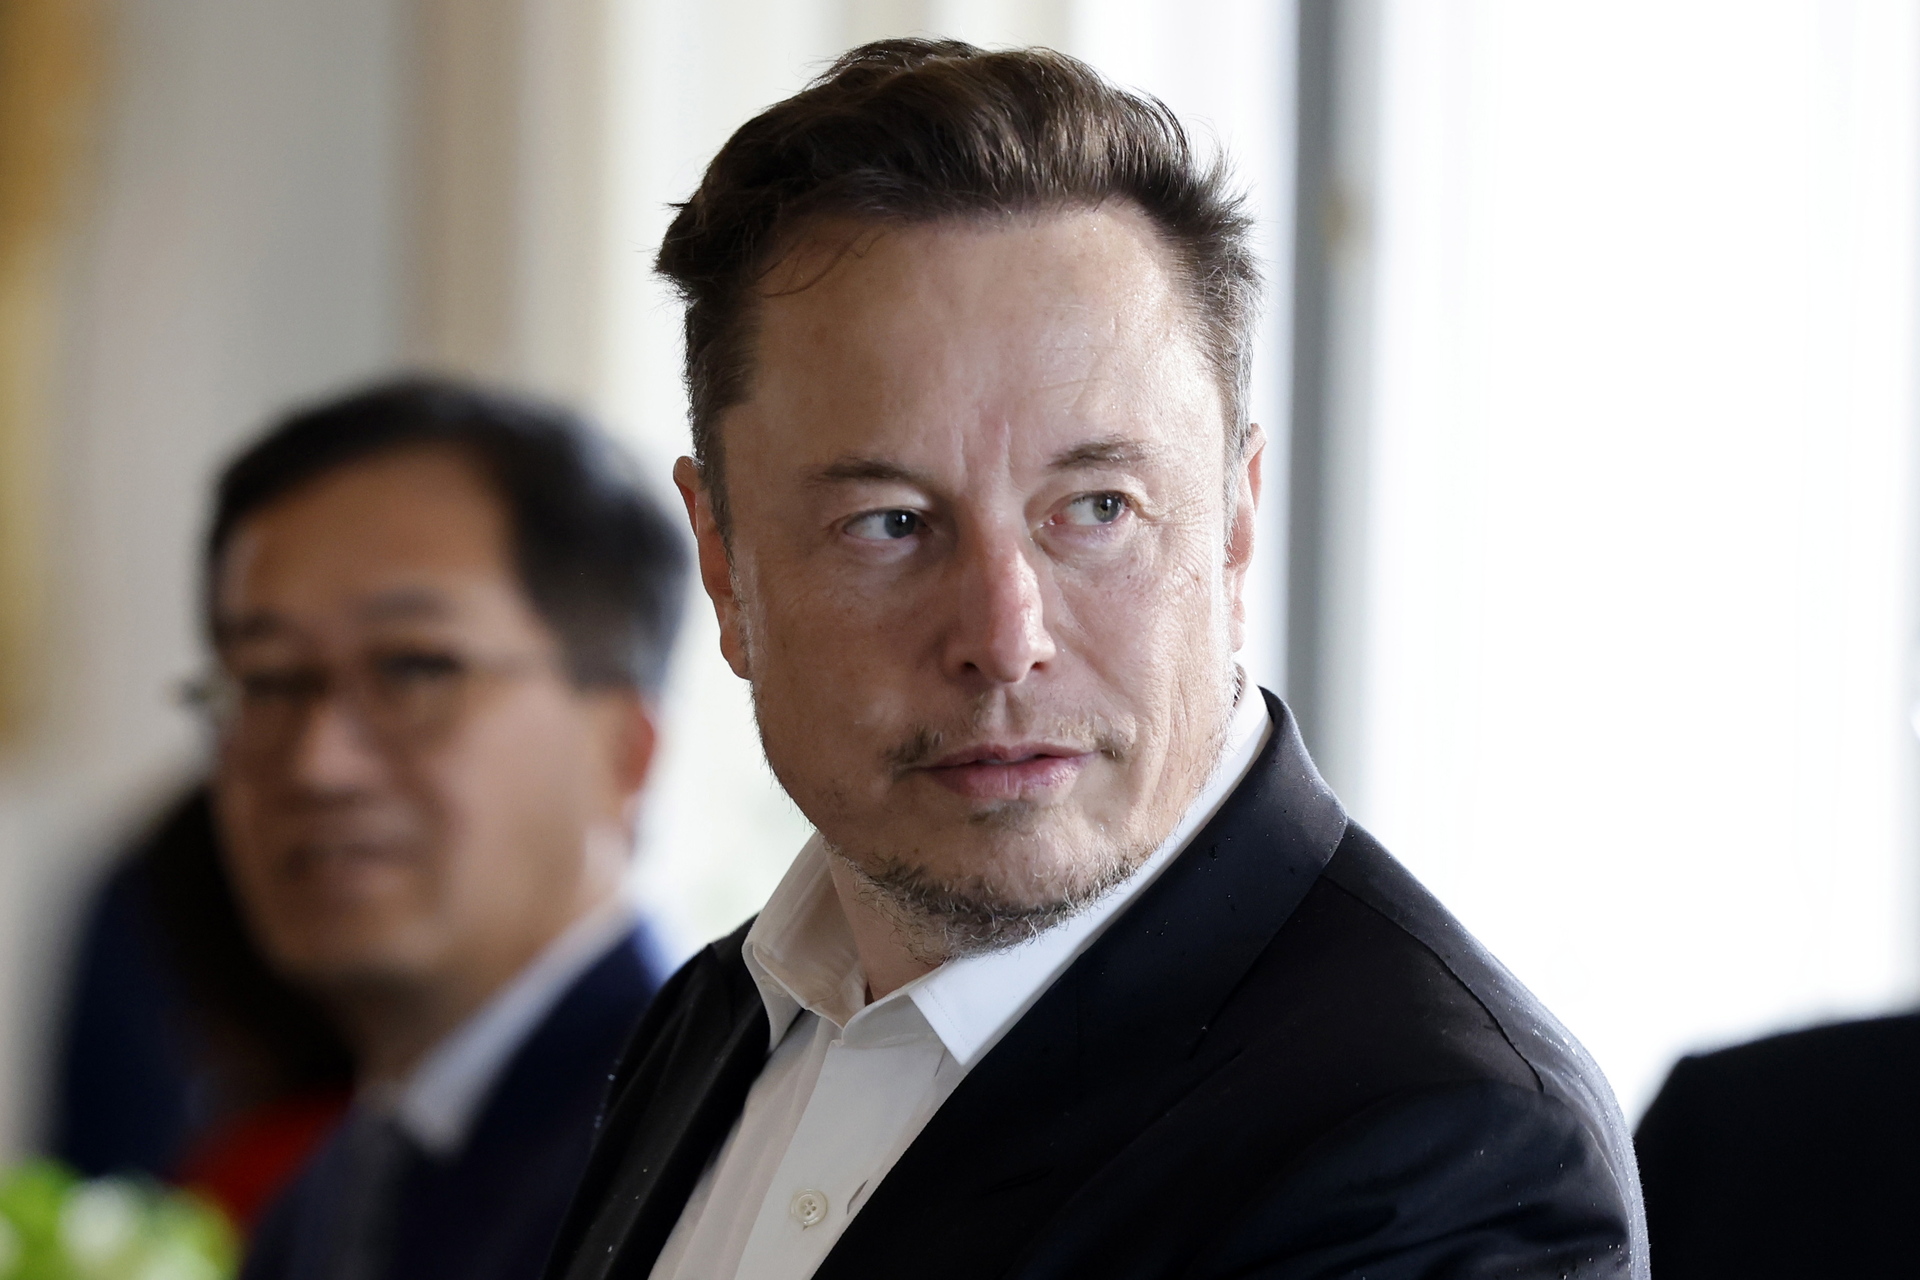 De acuerdo con el índice de Bloomberg, la fortuna actual de Elon Musk se estima en alrededor de 192.3 mil millones de dólares. (ARCHIVO)